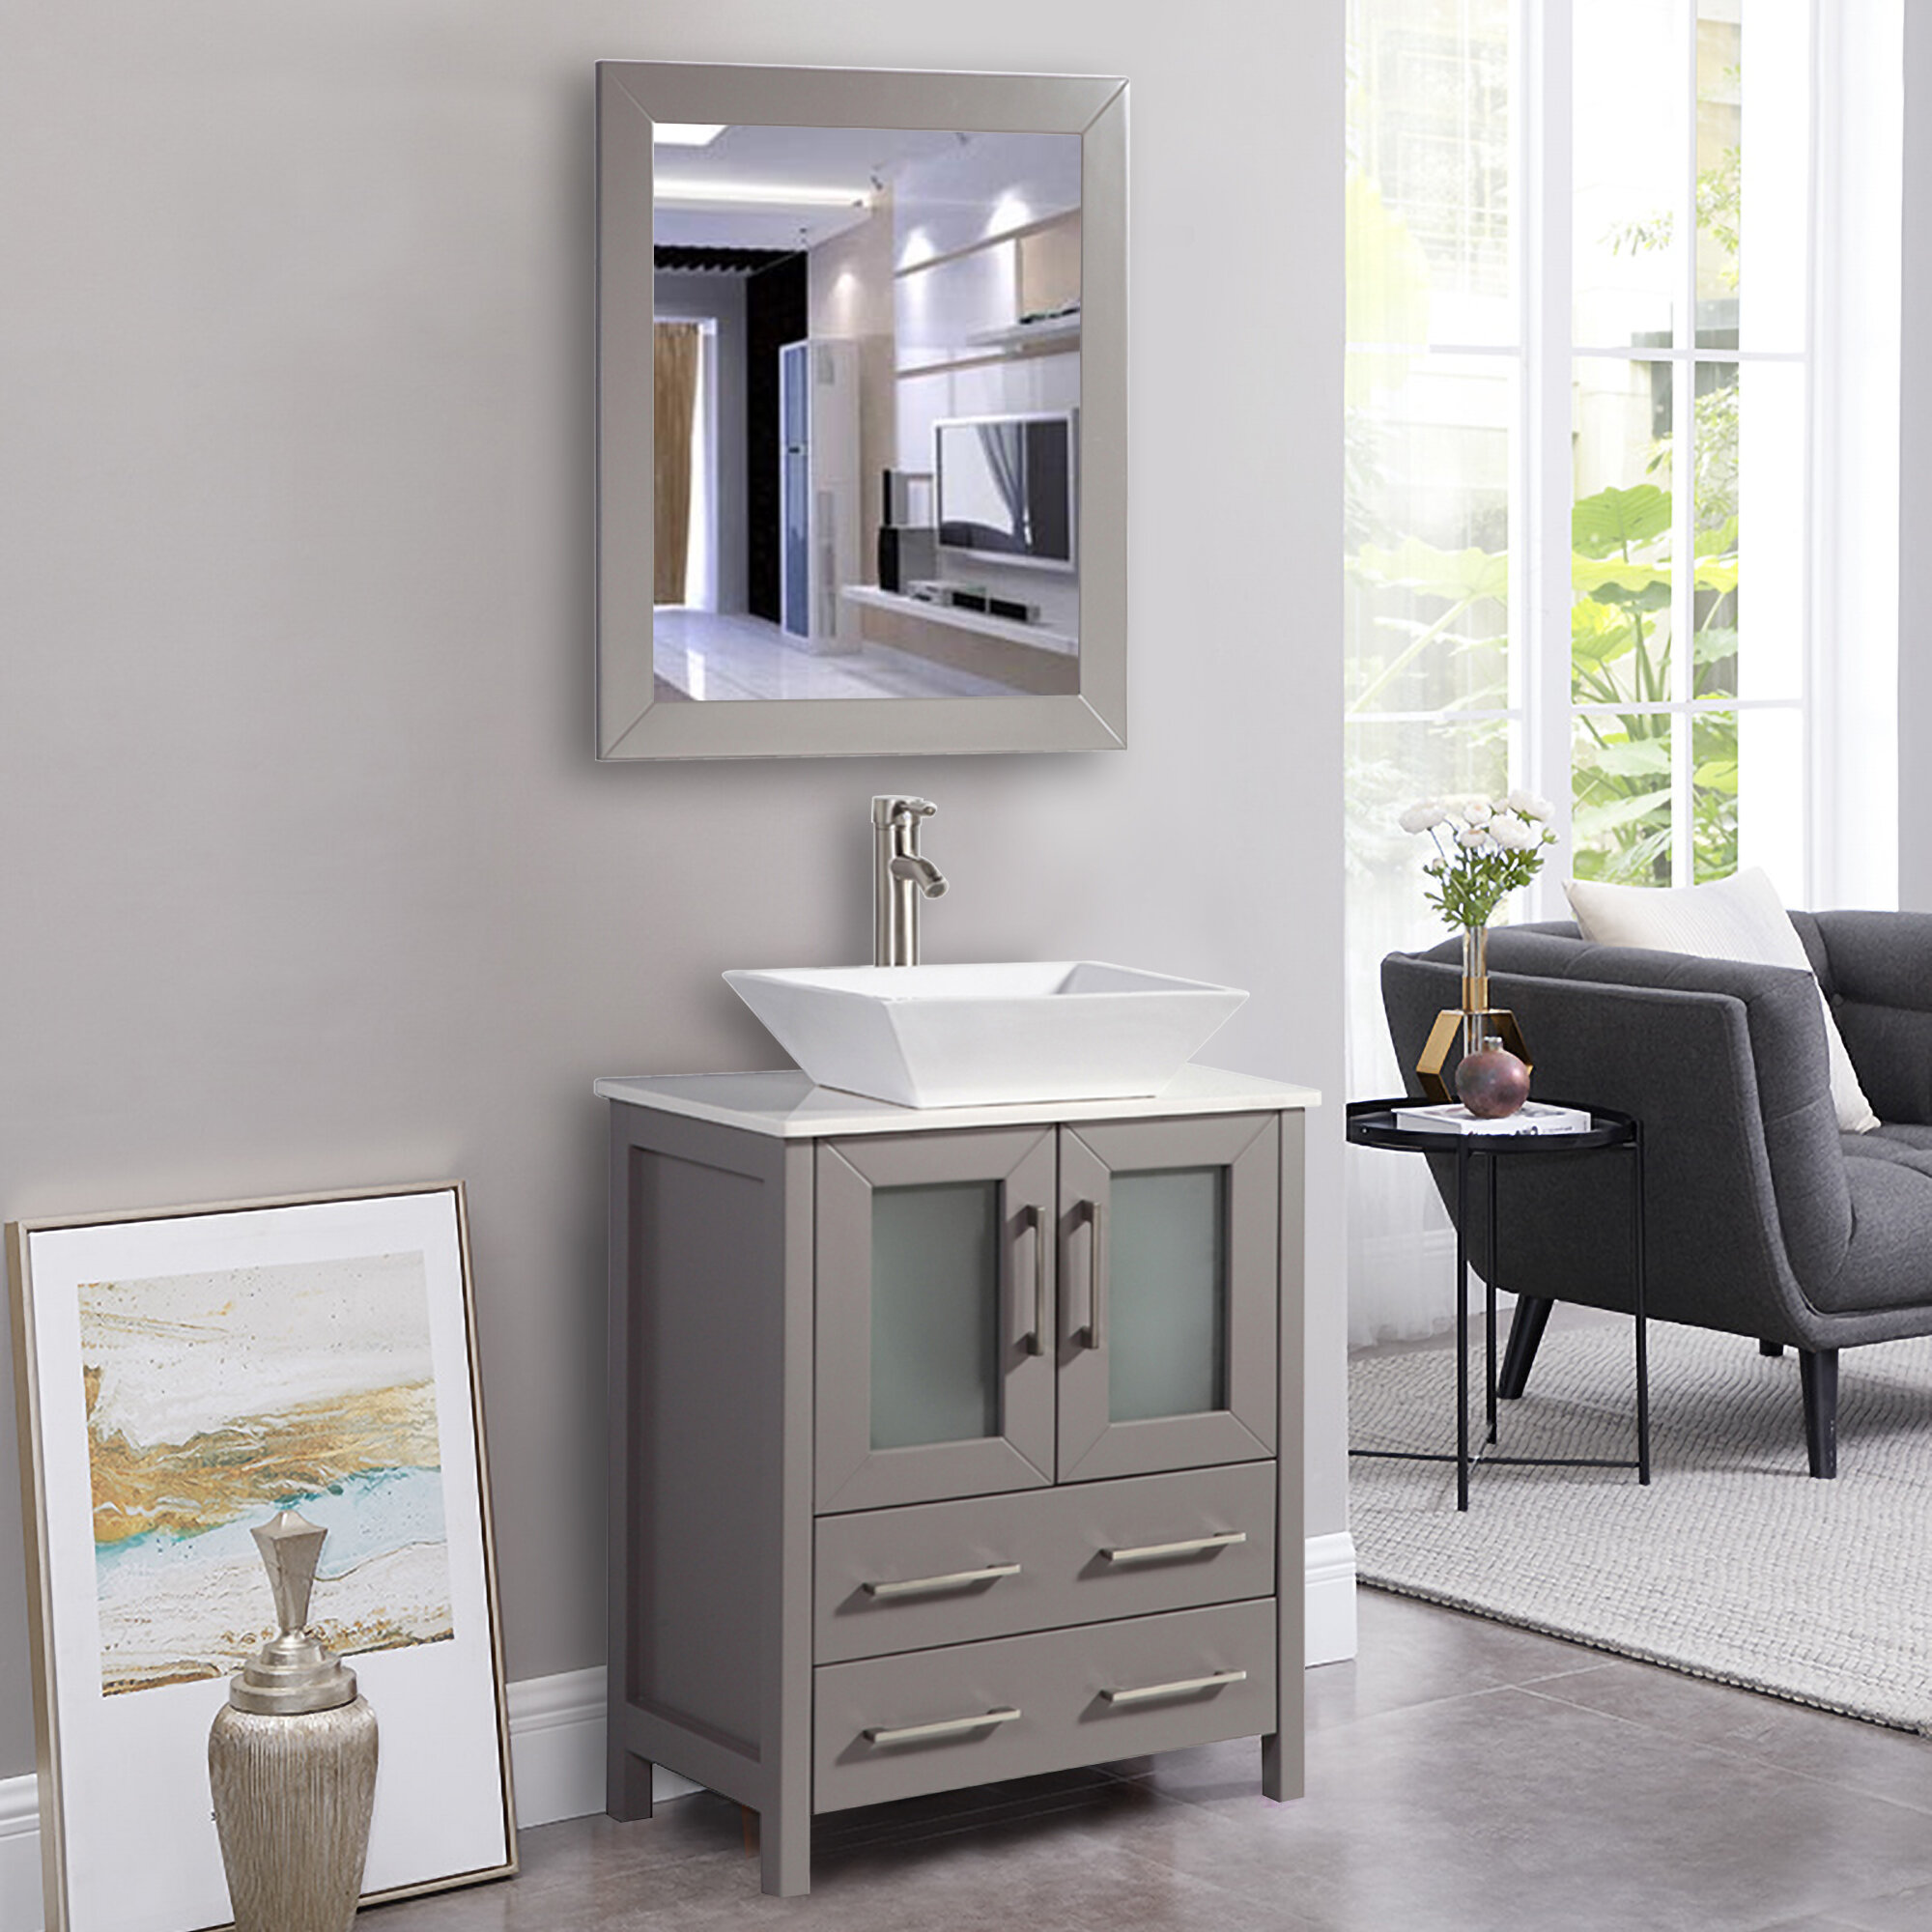 Zipcode Design Knutsen 24 Single Bathroom Vanity Set With Mirror Reviews Wayfair